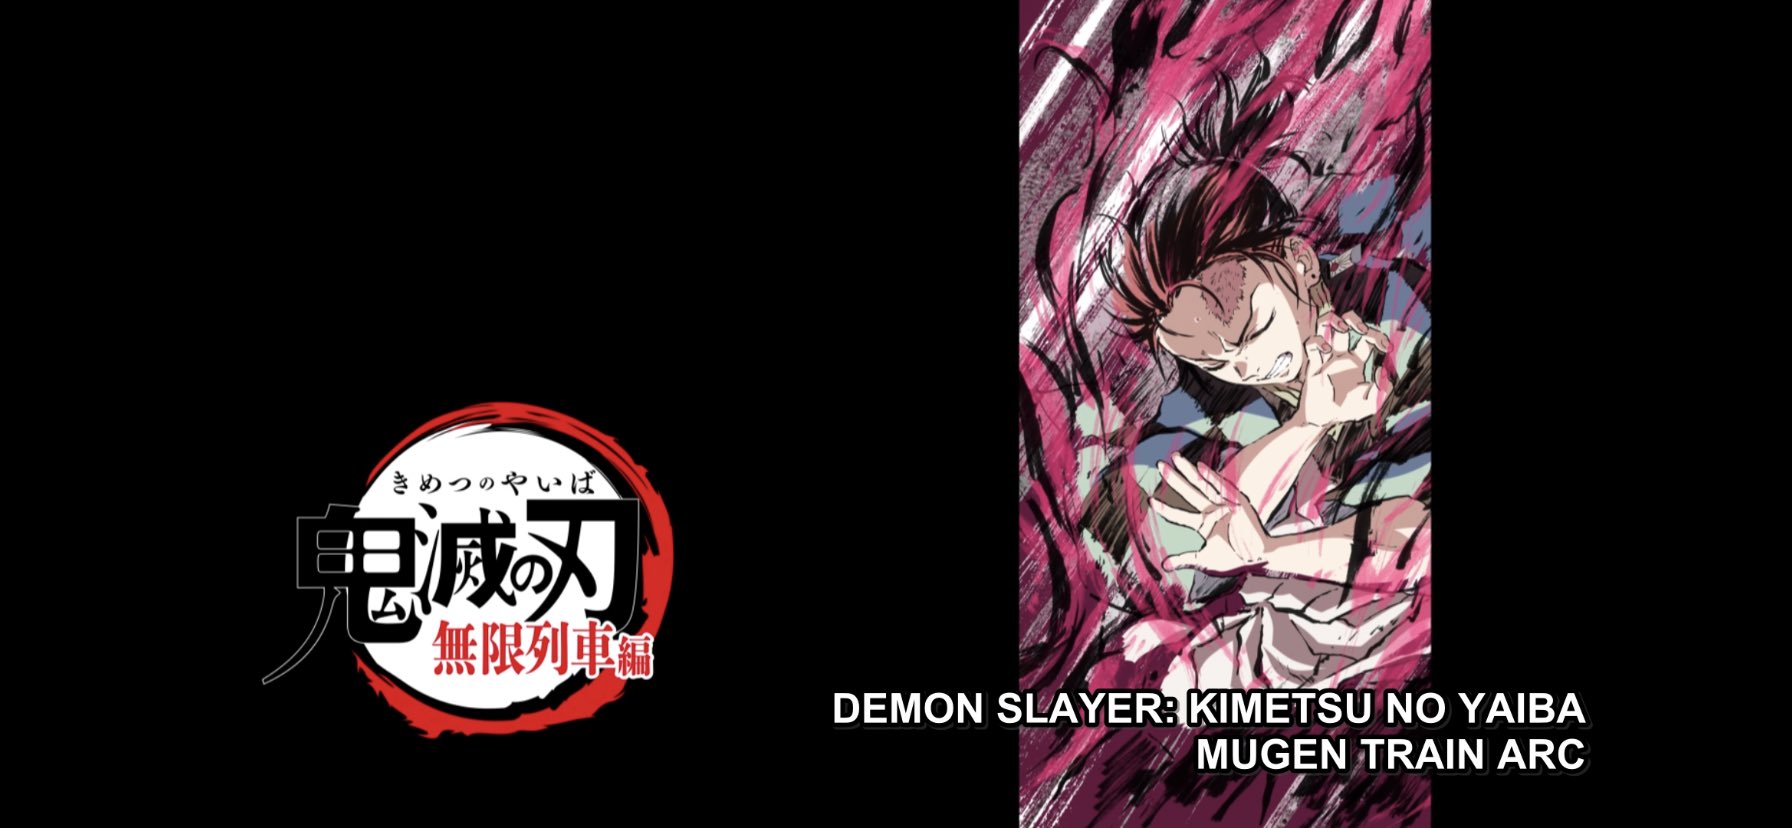 Demon Slayer season 2: The Mugen Train Arc, episode 3 recap